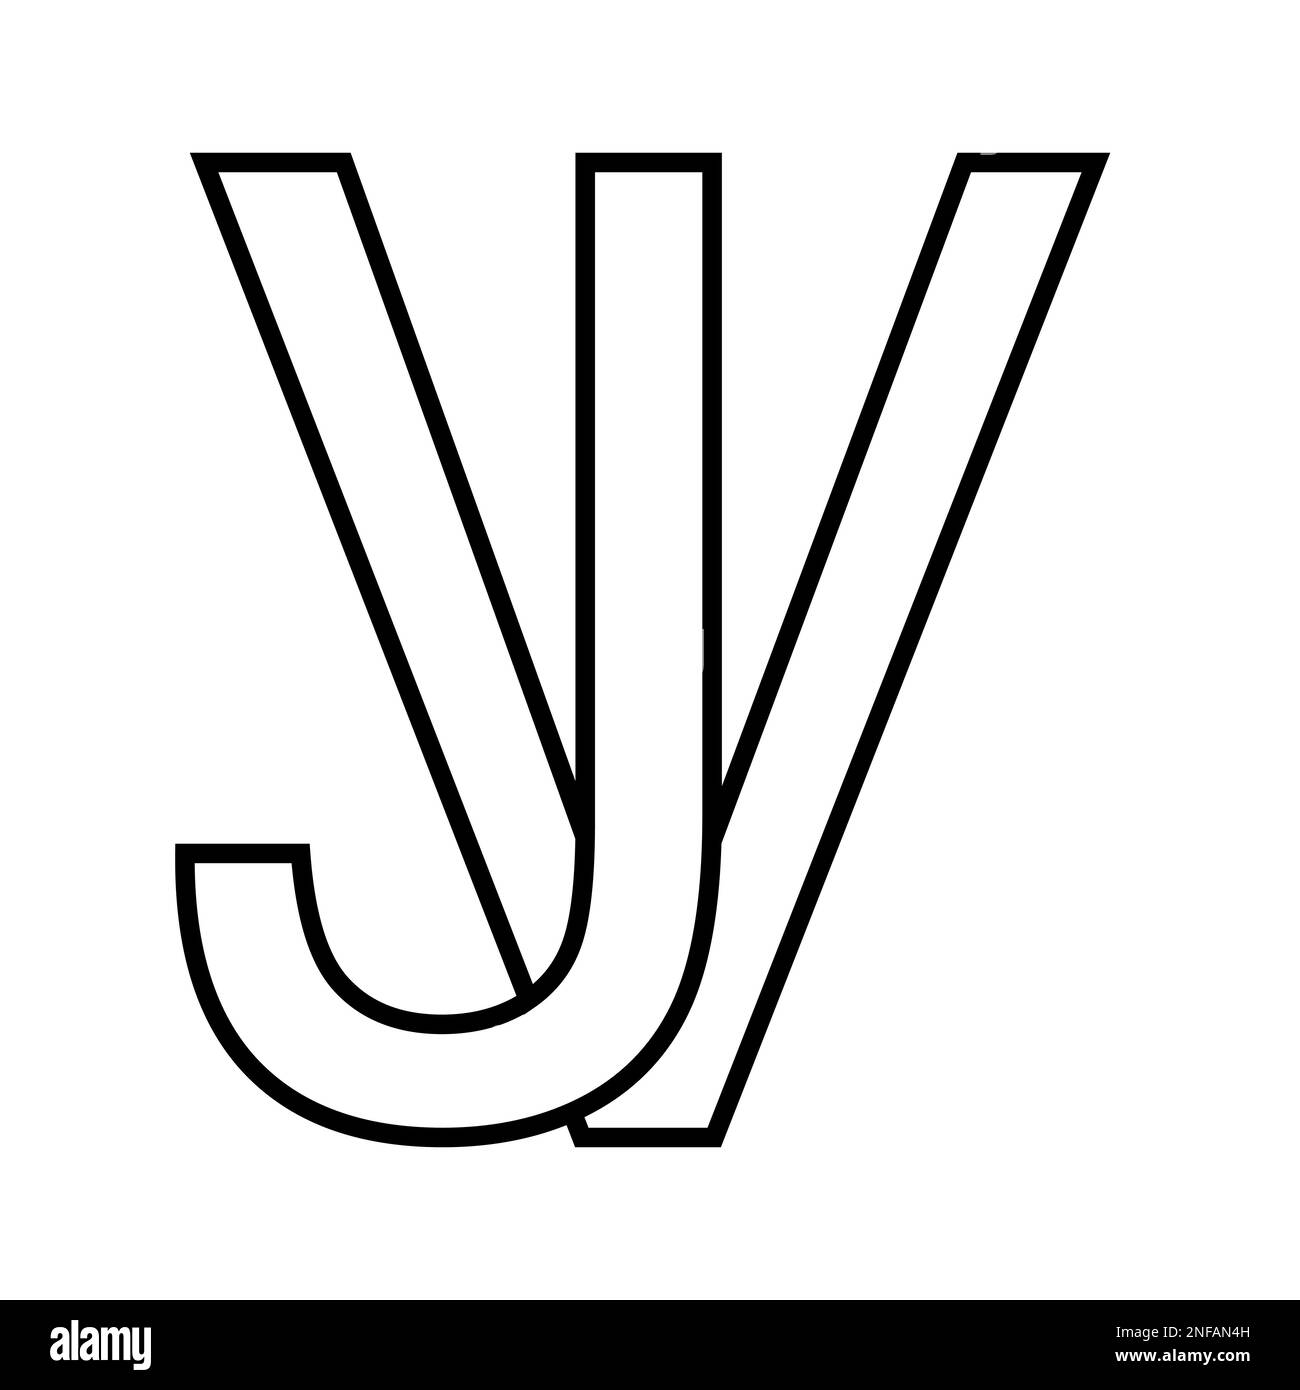 Logo sign vj jv, icon double letters logotype v j Stock Vector